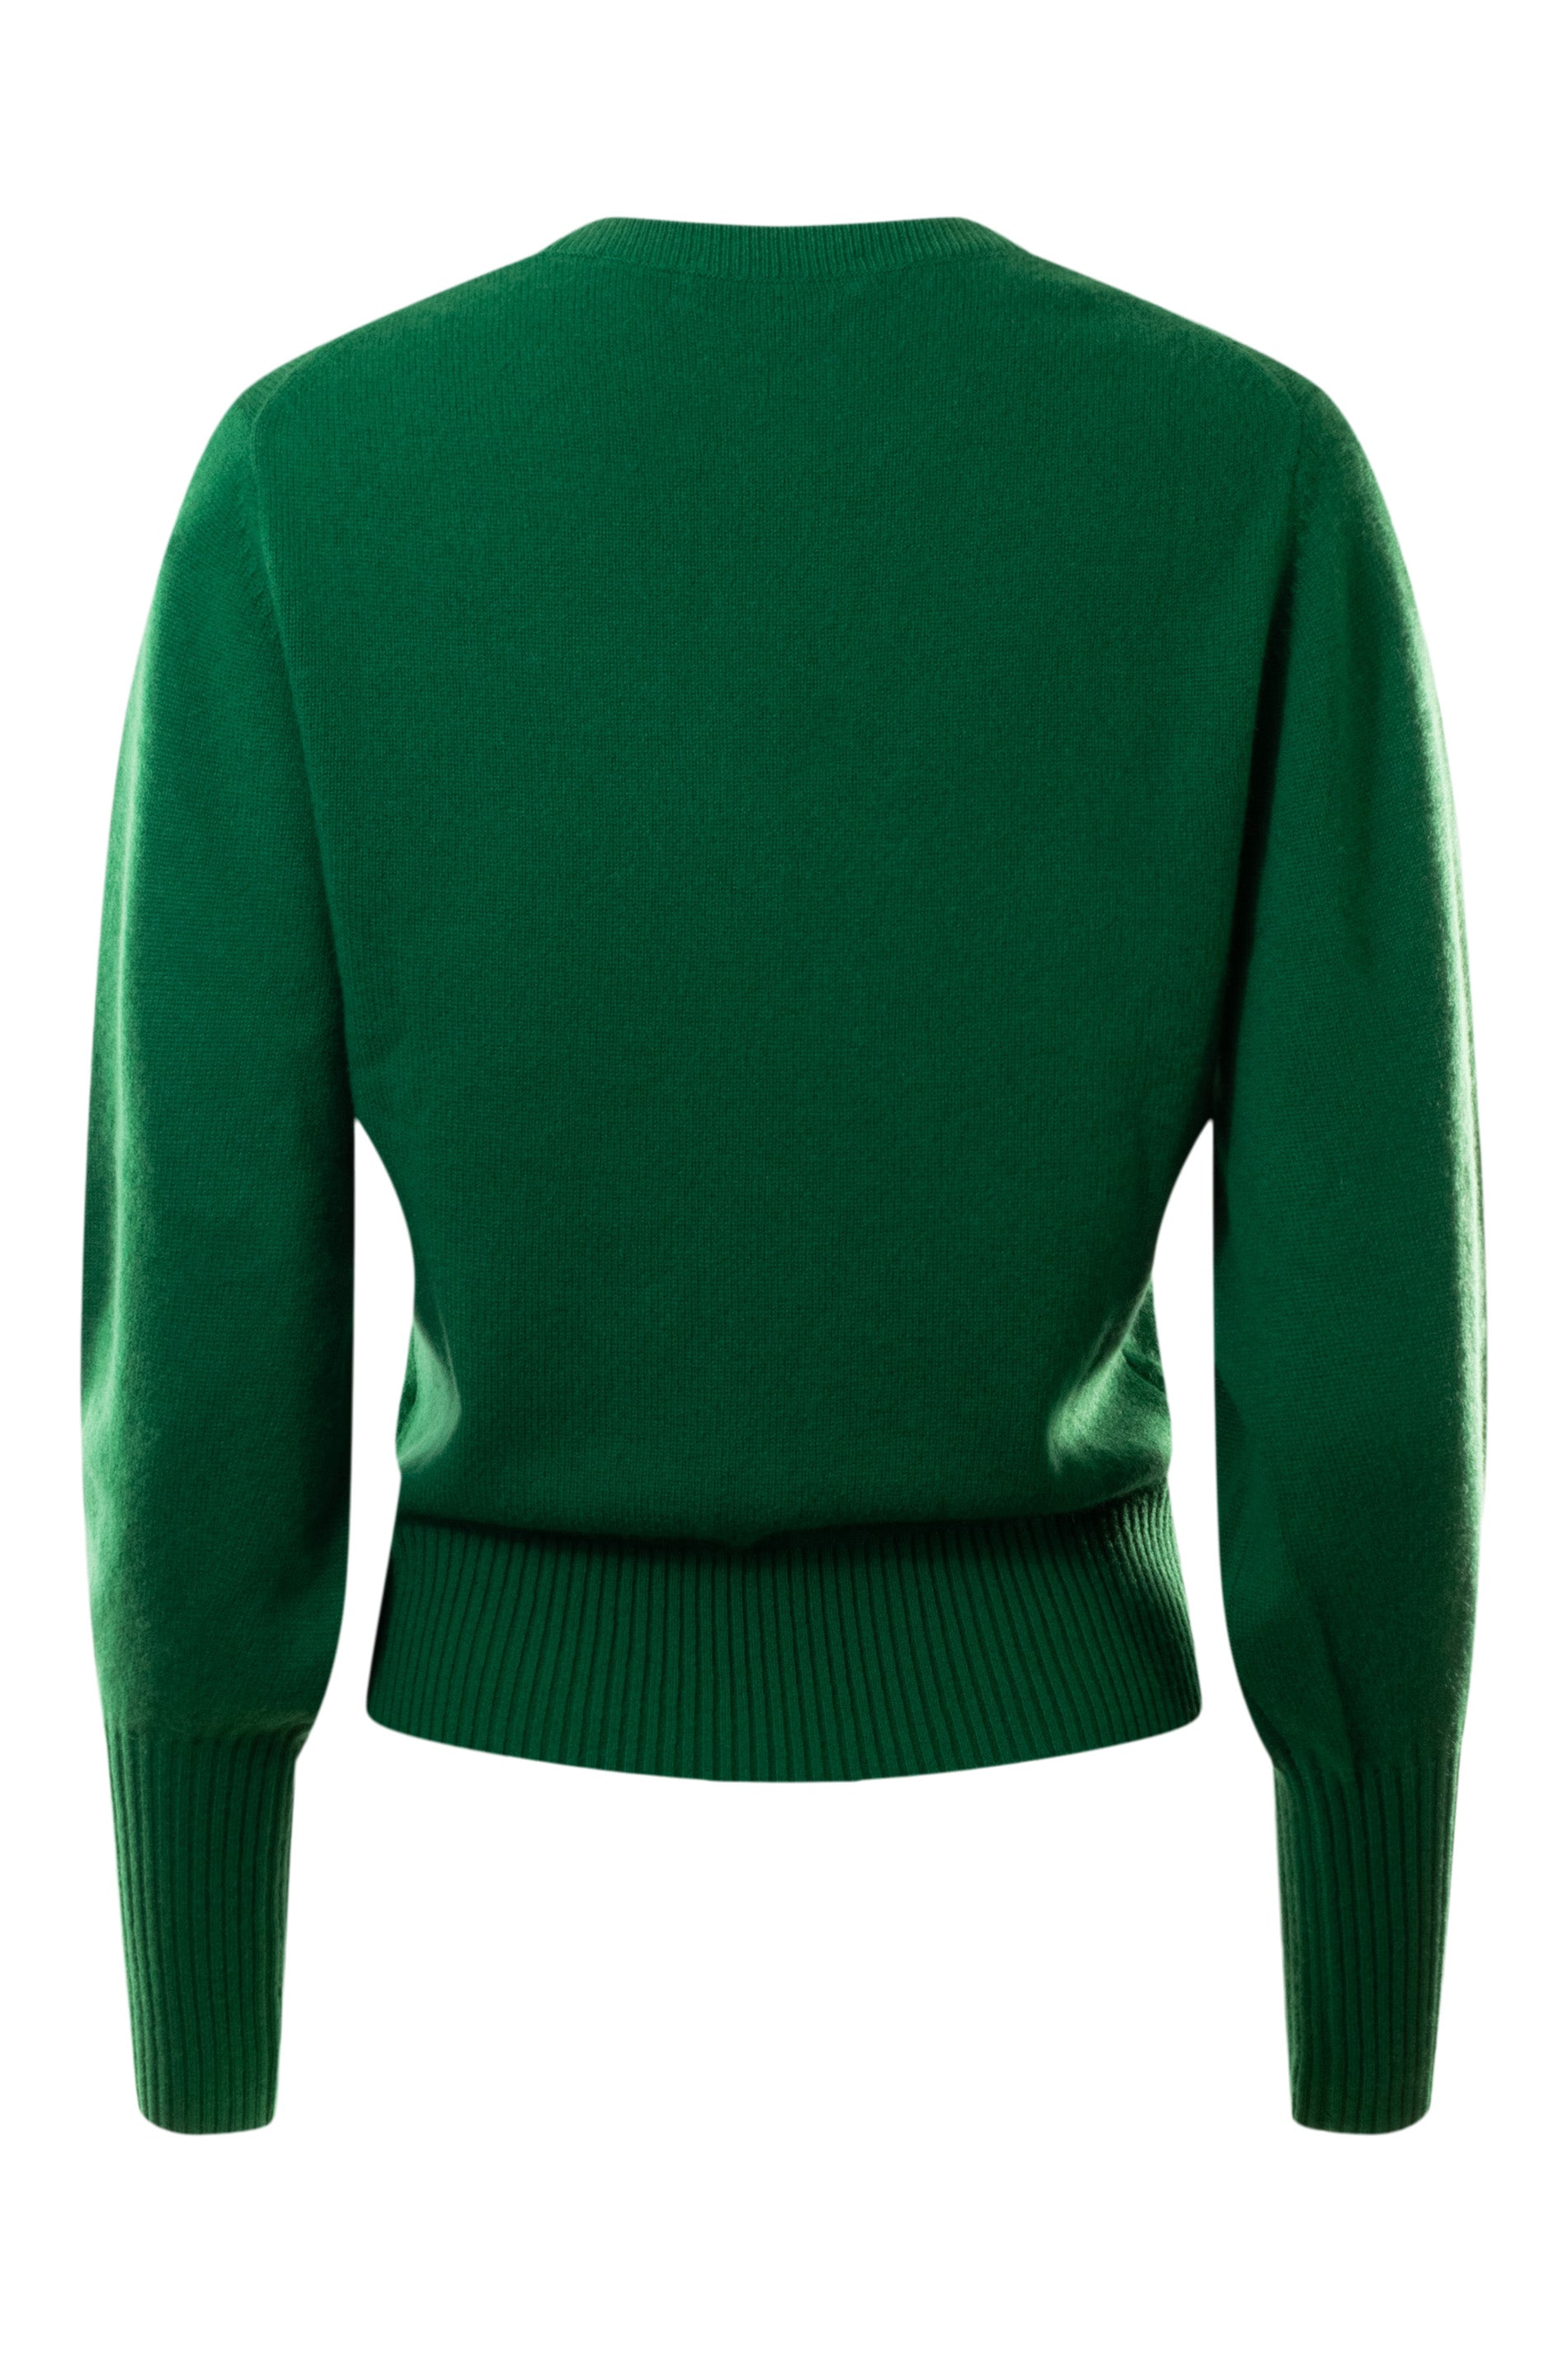 White & Warren Cashmere Blouson Sleeve Vneck Sweater in Jewel Green